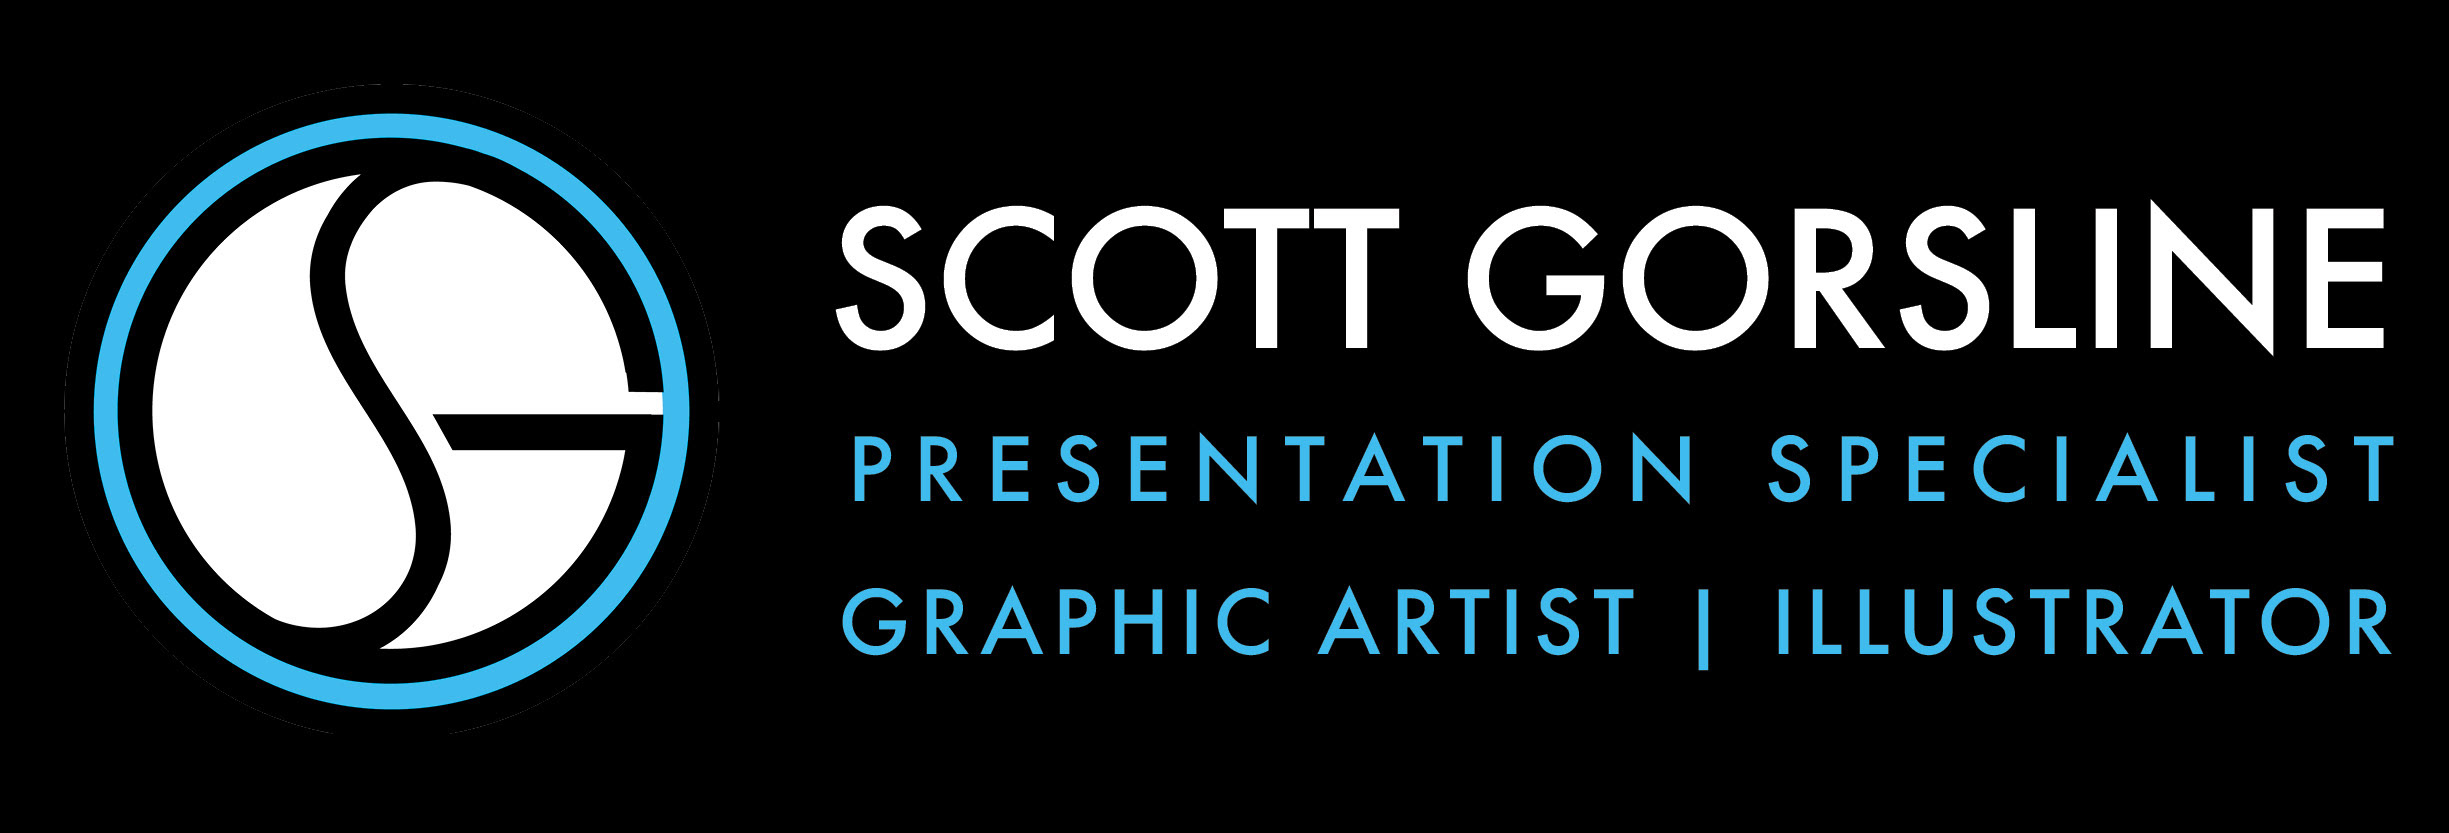 Scott Gorsline